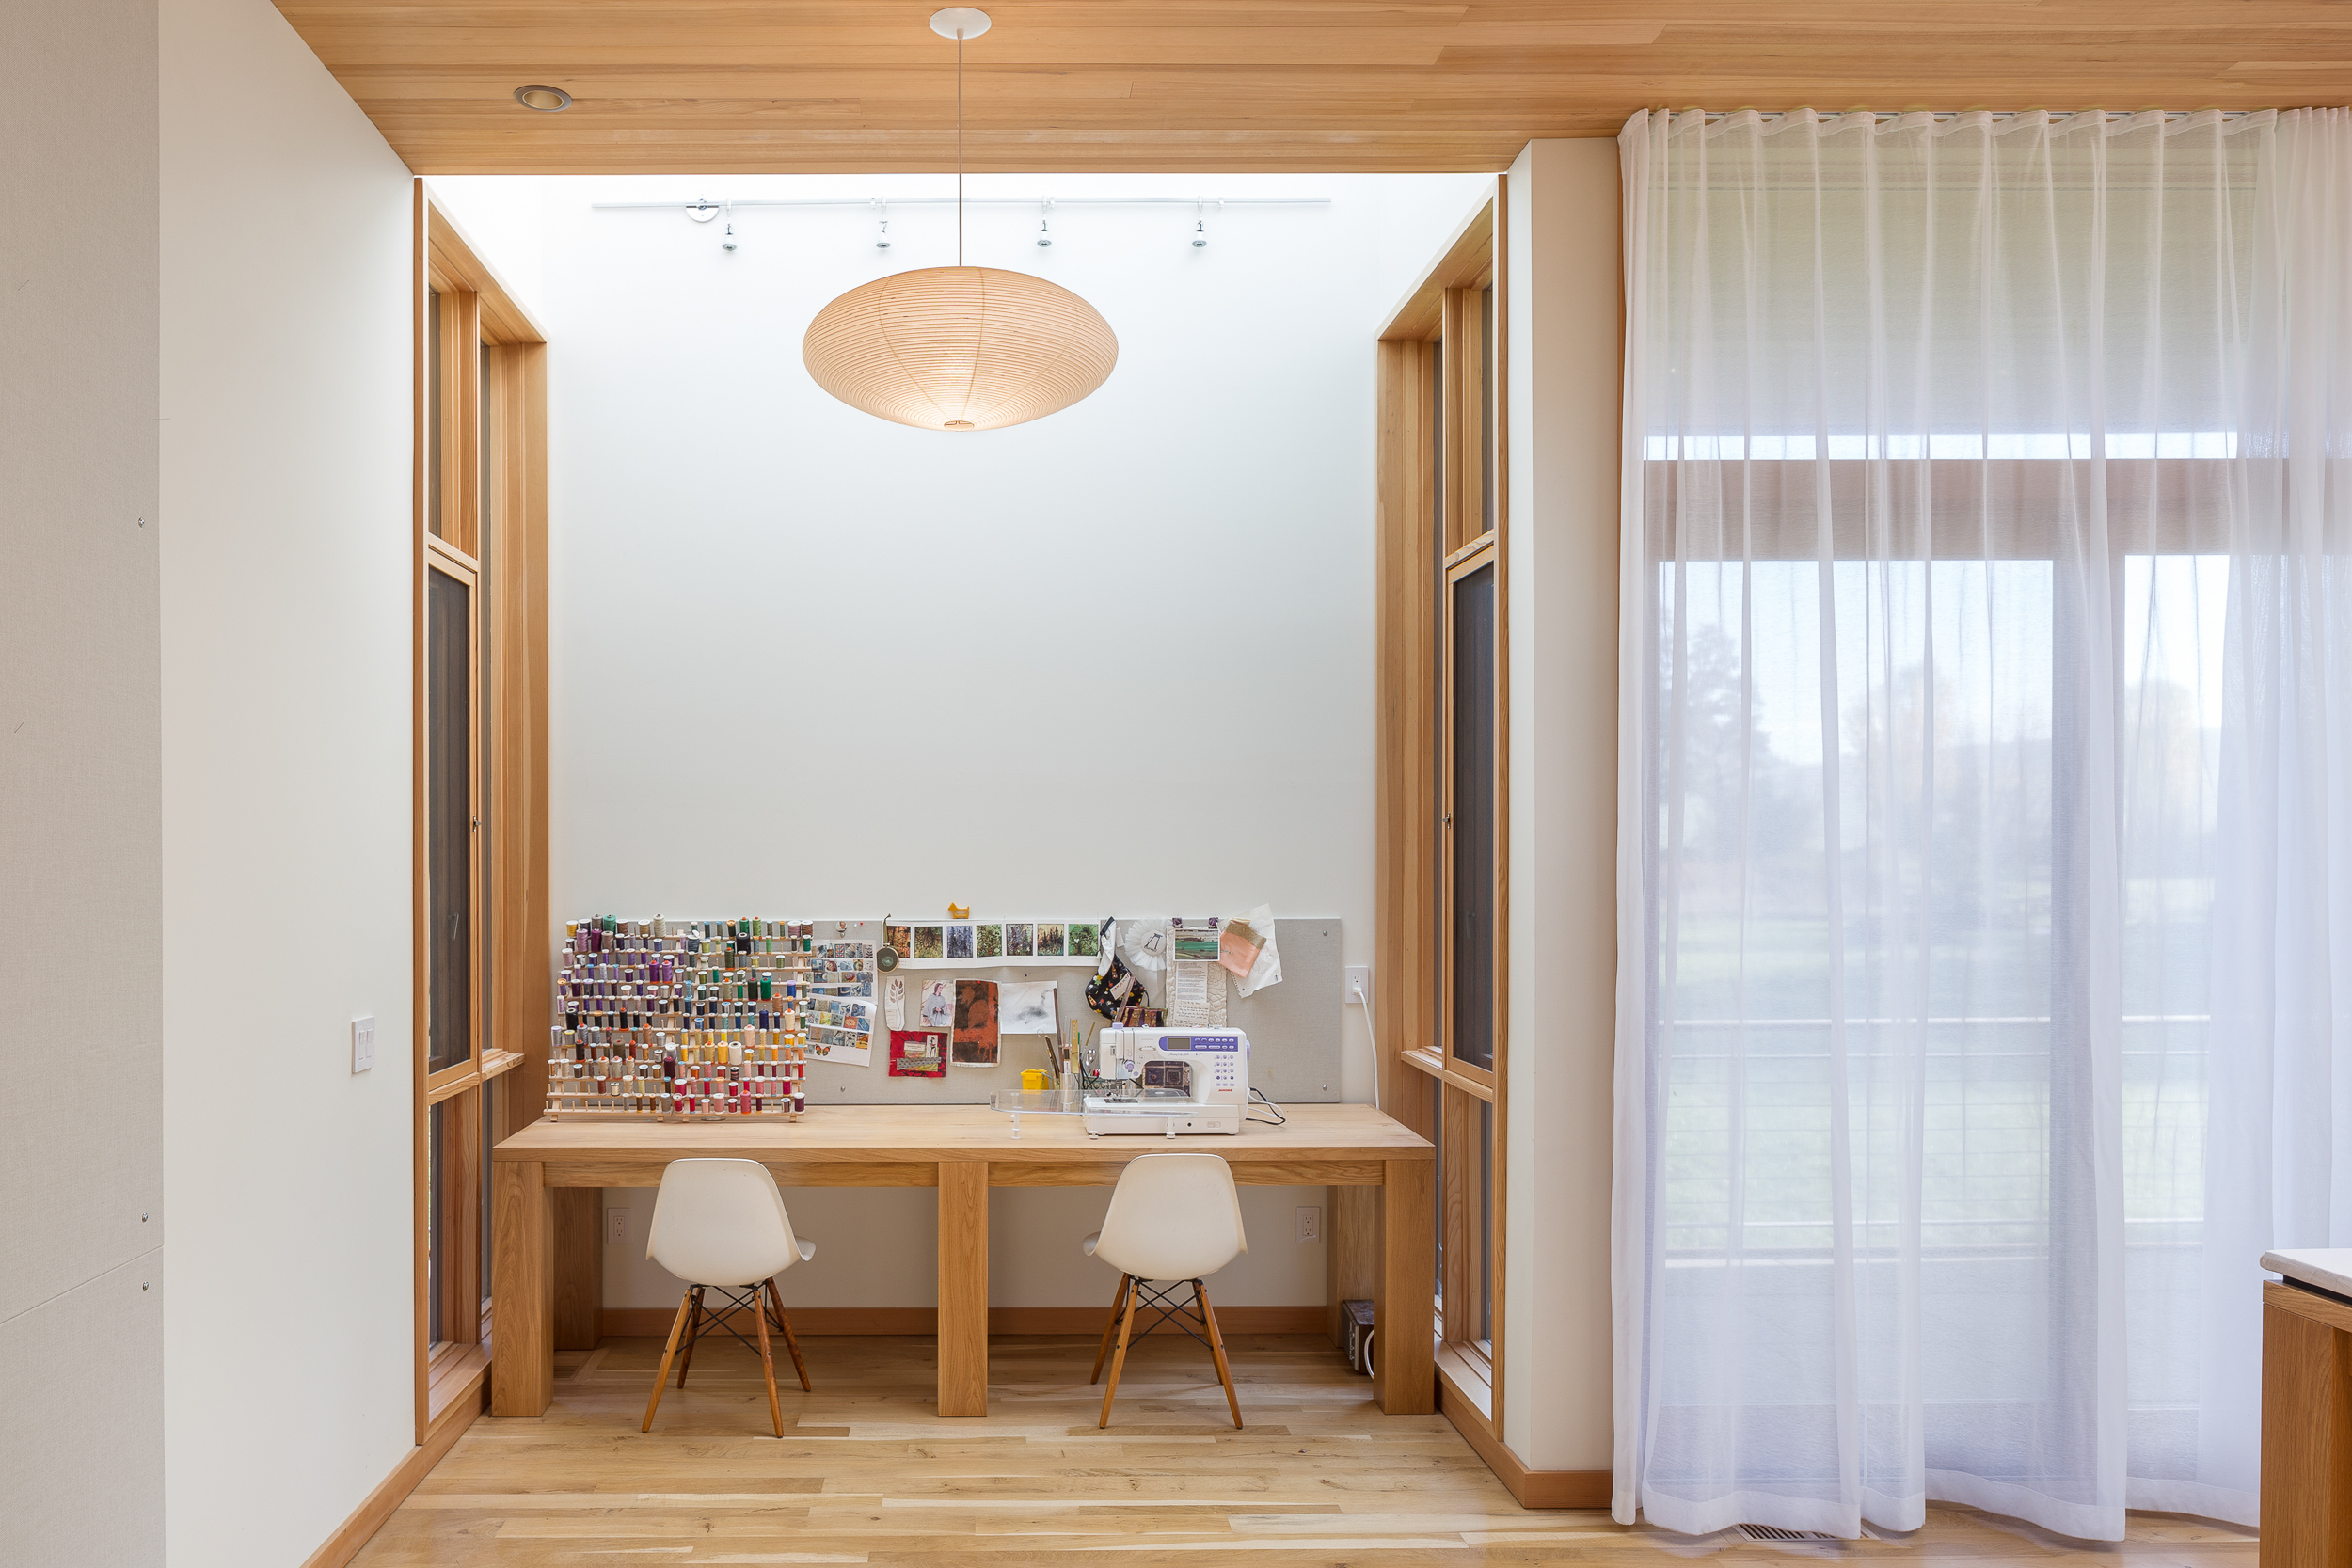  Ilsa’s Studio / Ellen Fortin Design + Architecture 